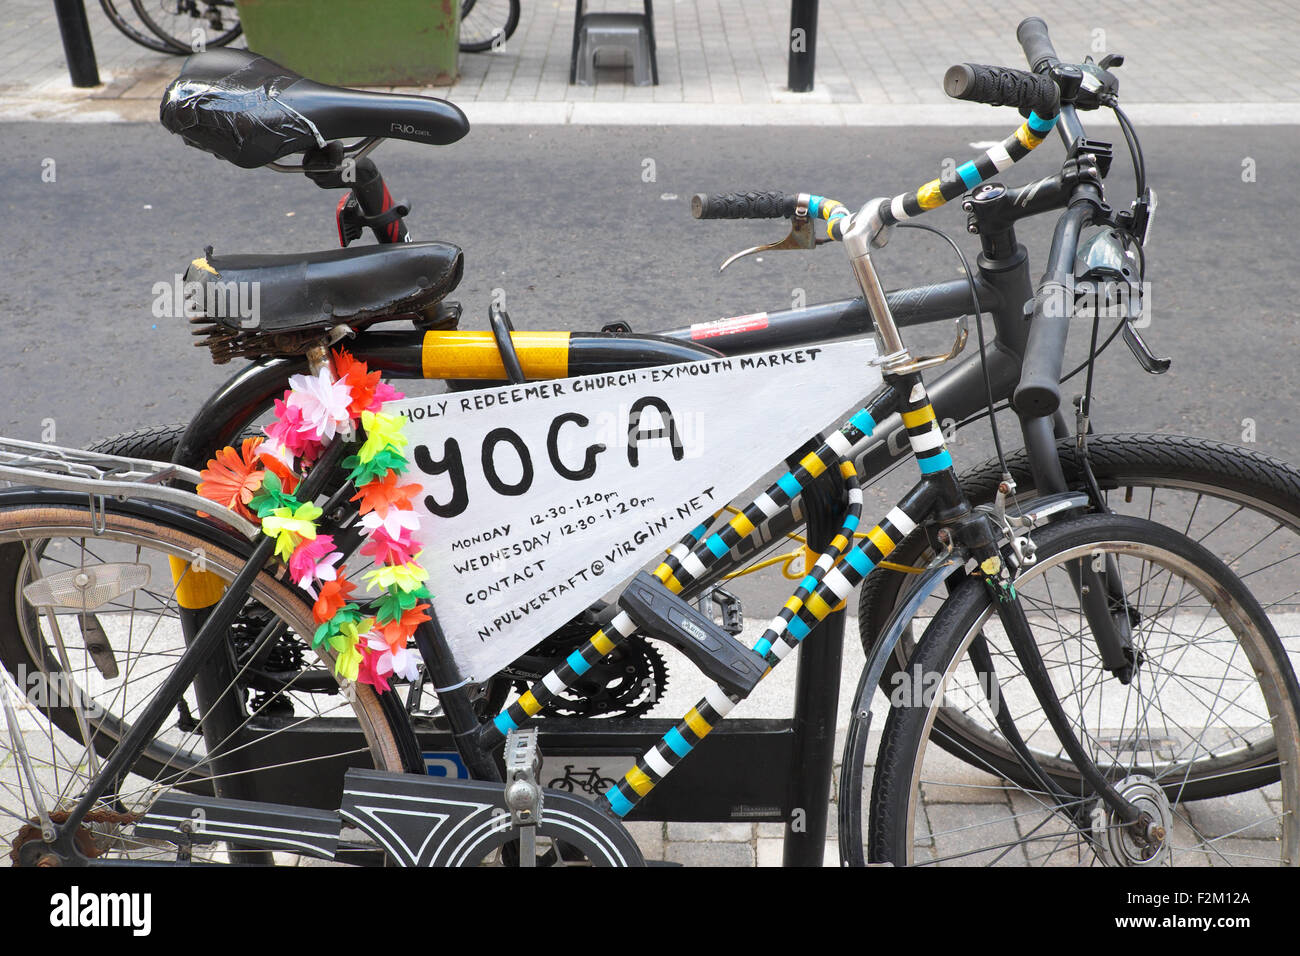 London UK Yoga signe sur un vélo garé en Exmouth Market Islington Finsbury EC1 Banque D'Images